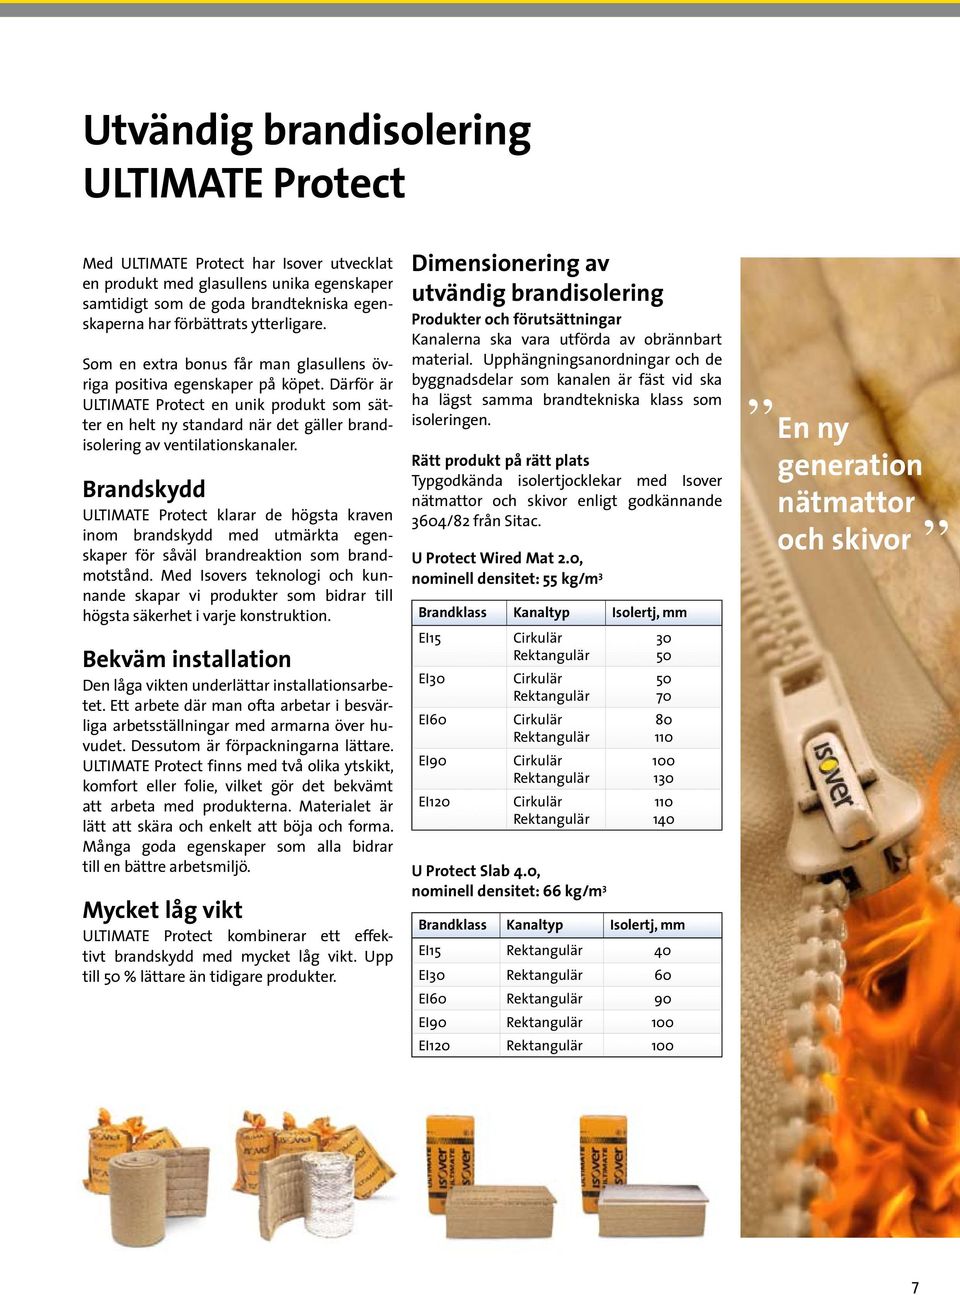 Därför är ULTIMATE Protect en unik produkt som sätter en helt ny standard när det gäller brandisolering av ventilationskanaler.